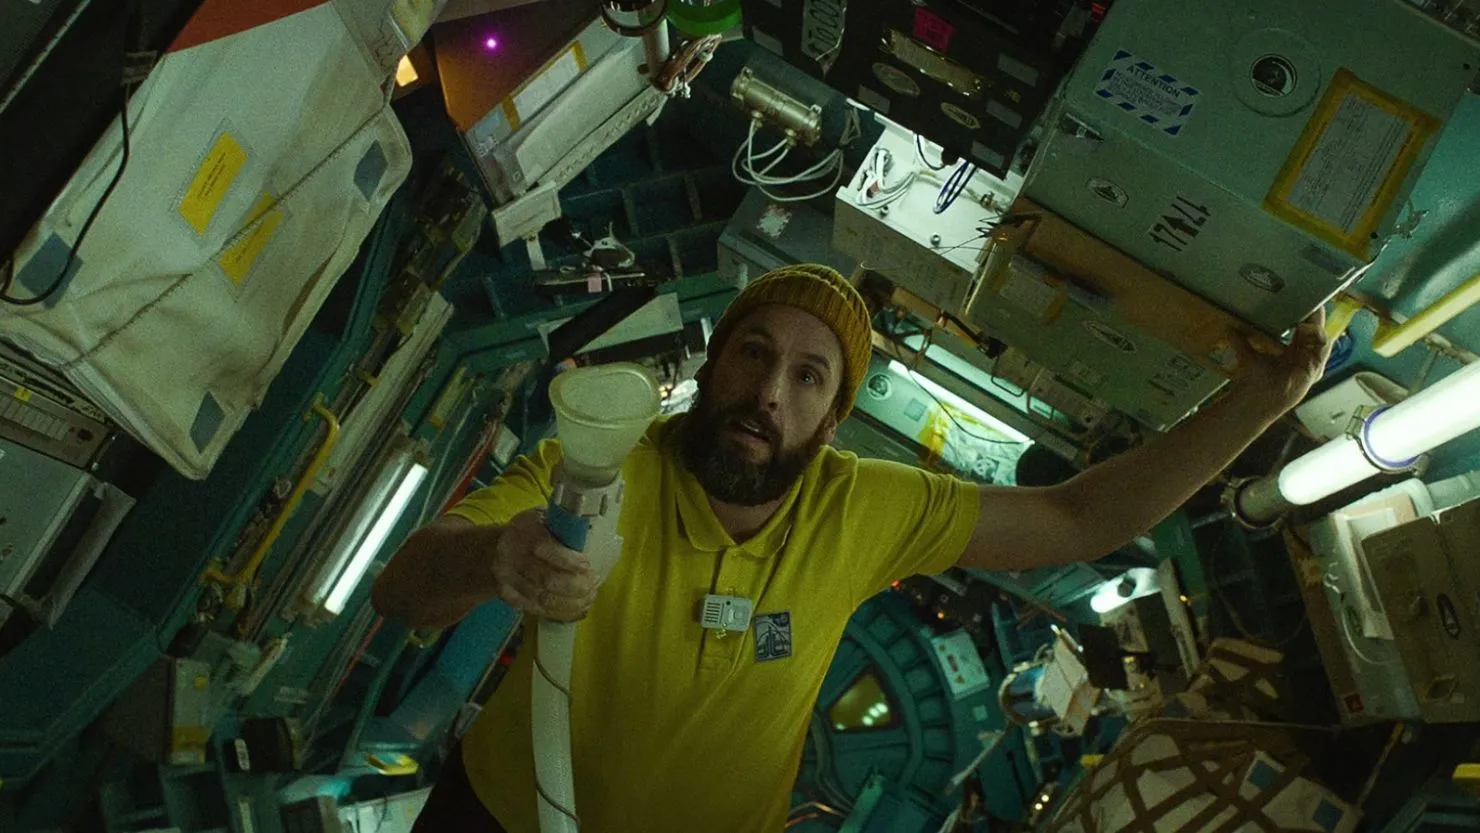 Ein Astronaut in einem gelben Hemd schwebt in Null-G